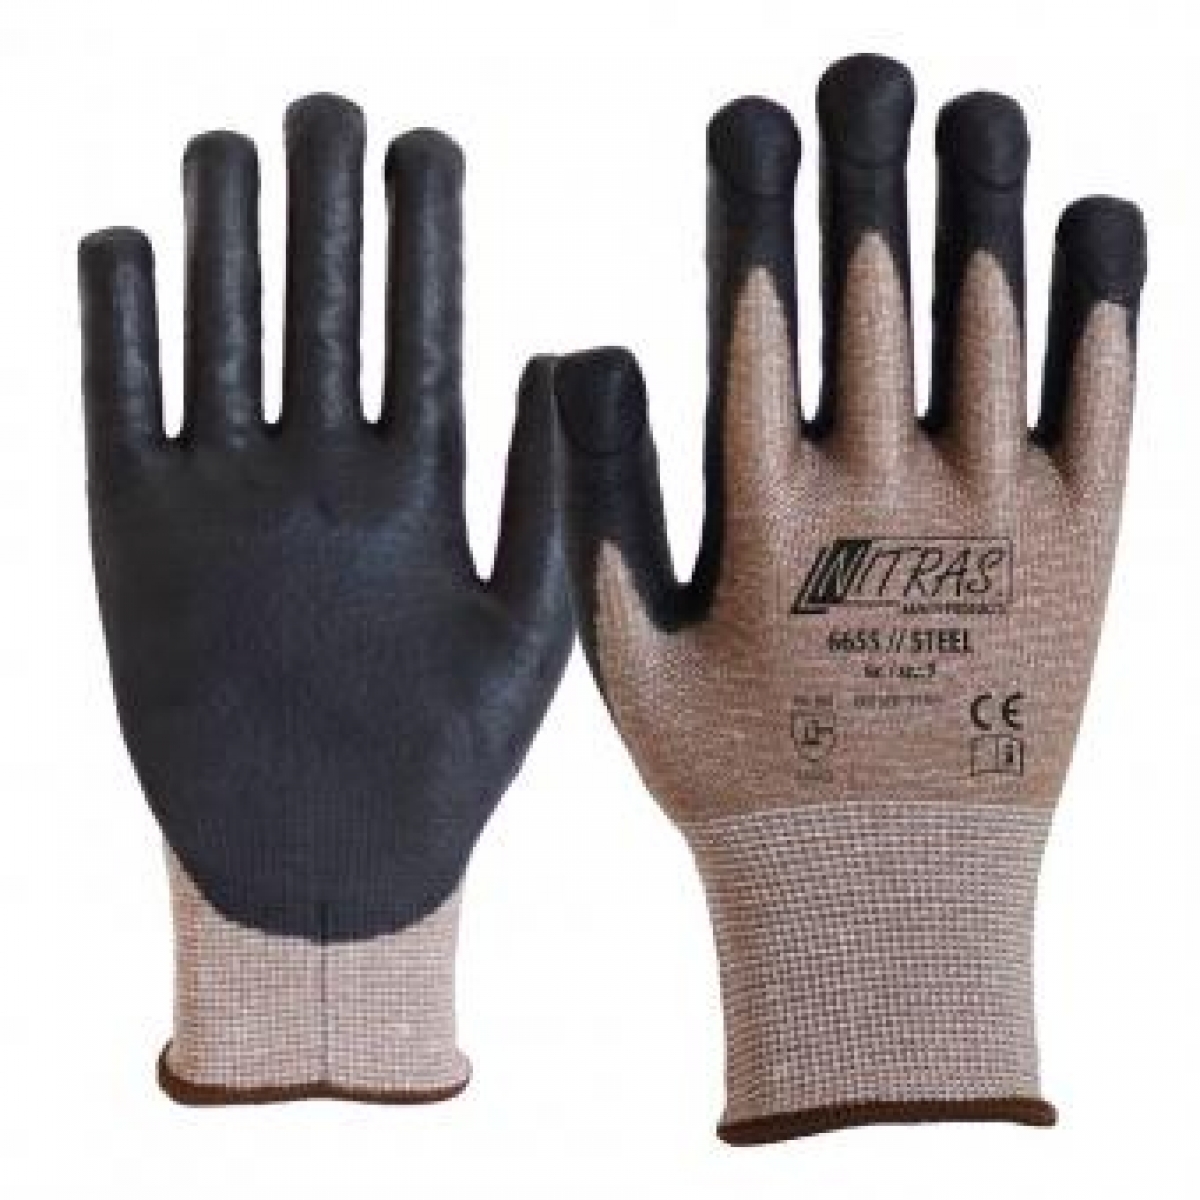 NITRAS STEEL, Handschuhe mit hochem Stich- und Schnittschutz, braun, VE = 12 Paar